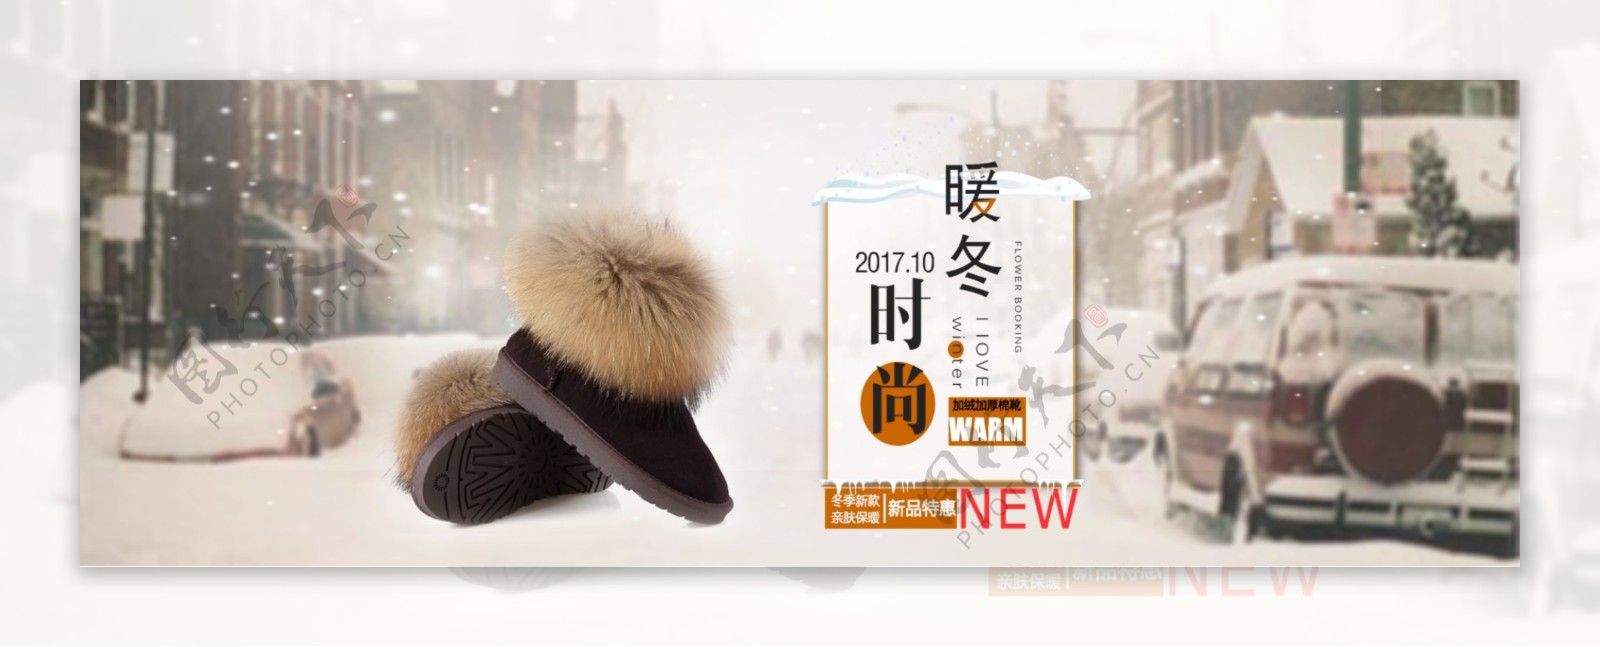 城市街道雪花暖冬上新时尚鞋靴新品电商海报banner